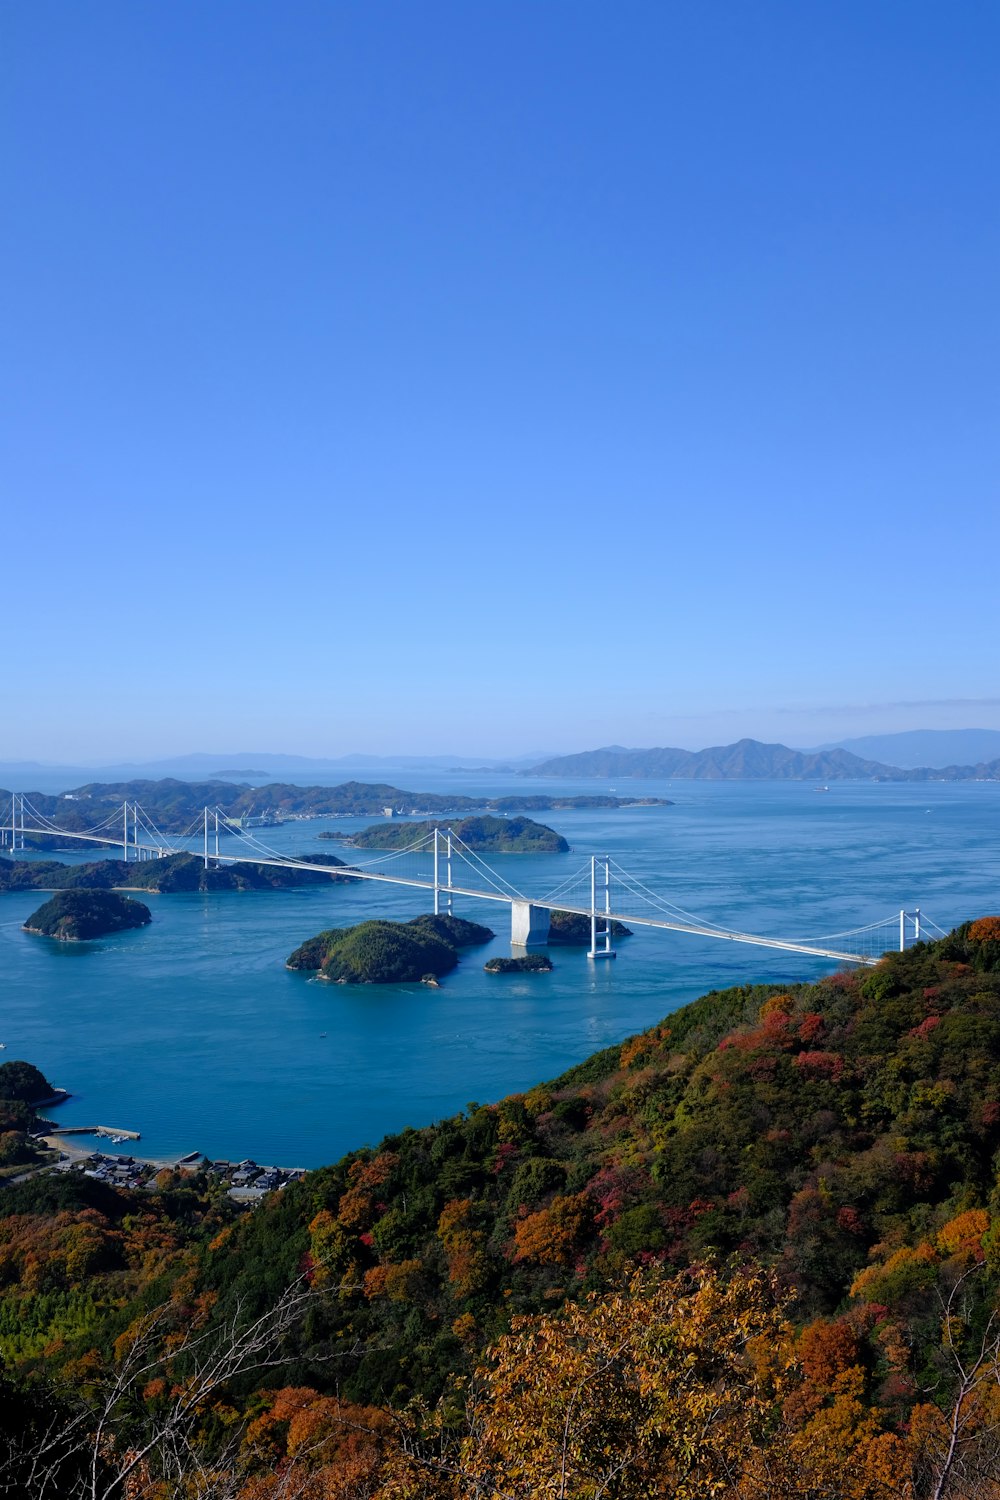 landscape photo of a bridge